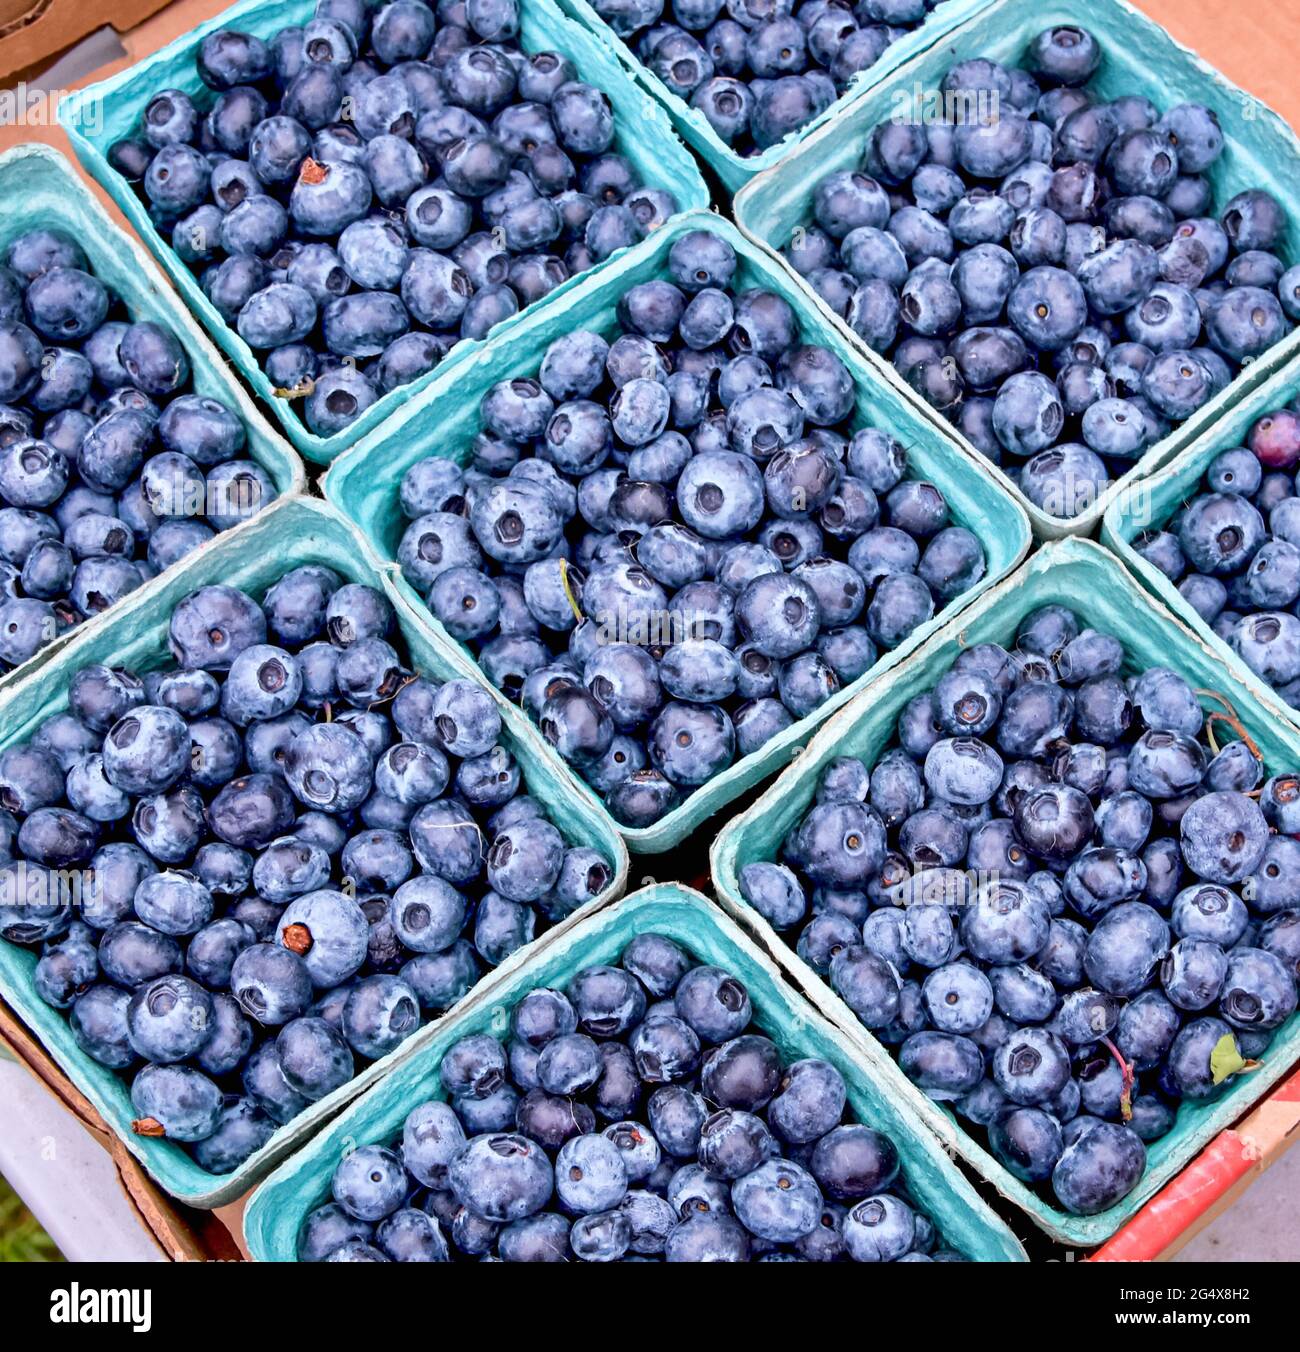 Bleuets fraîchement cueillis dans des conteneurs en boîte sur un marché agricole local. Gros plan. Banque D'Images